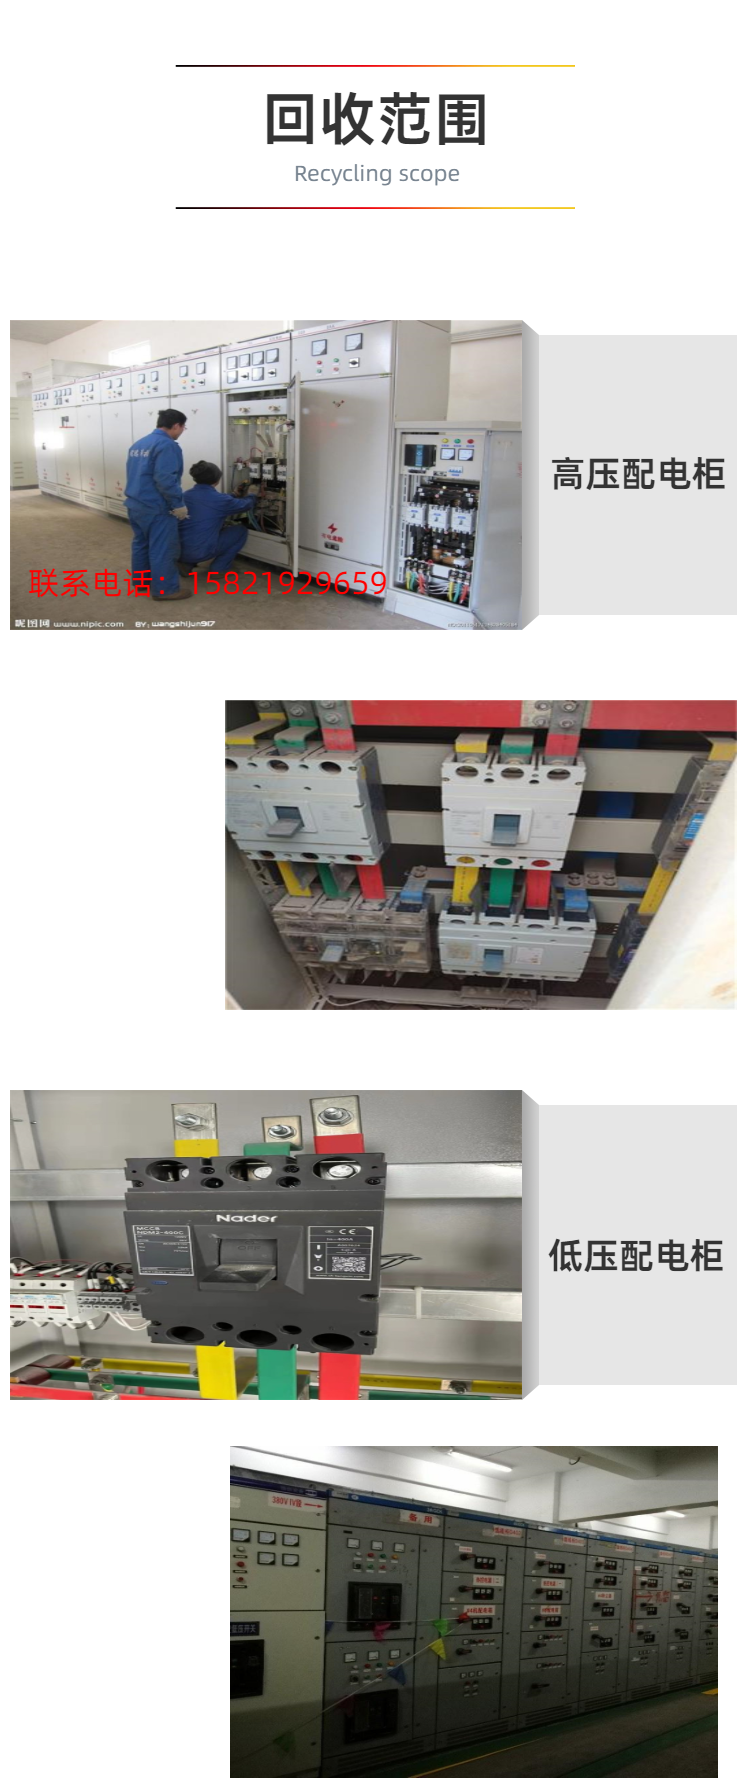 武进低压配电柜回收 配电房配电设备回收现场估价